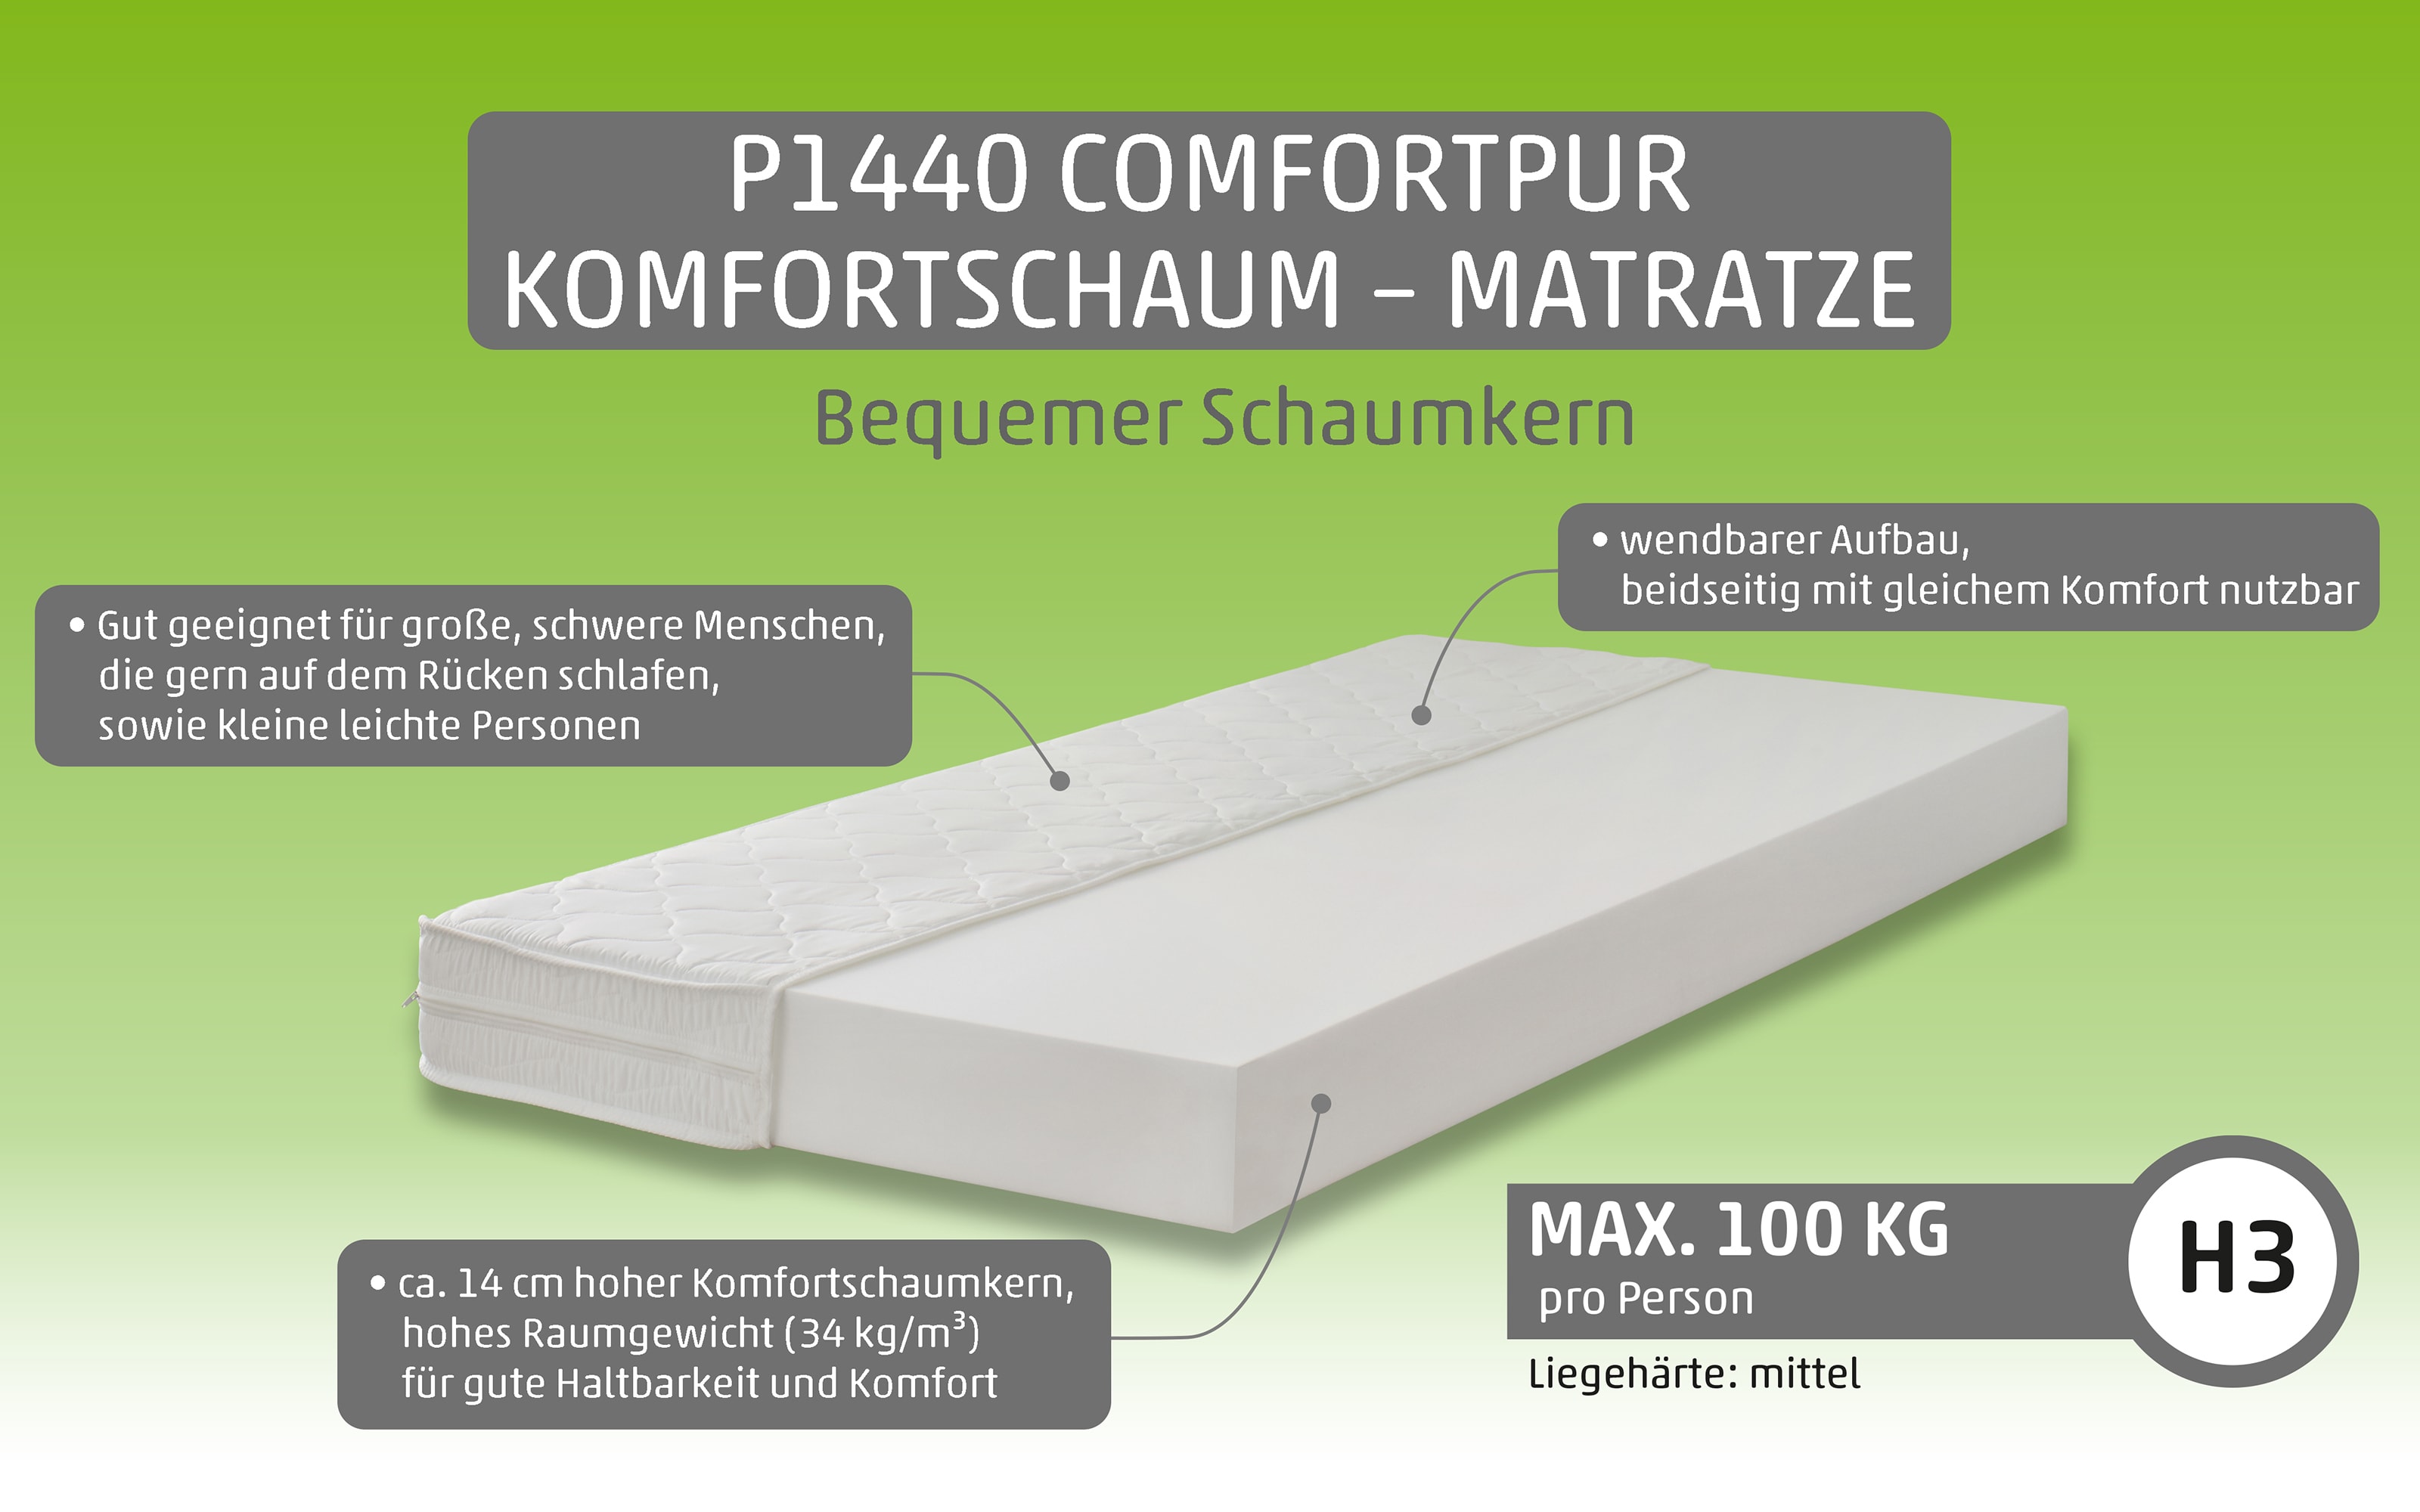 Komfortschaum-Matratze P1440 ComfortPur, 80 x 200 cm